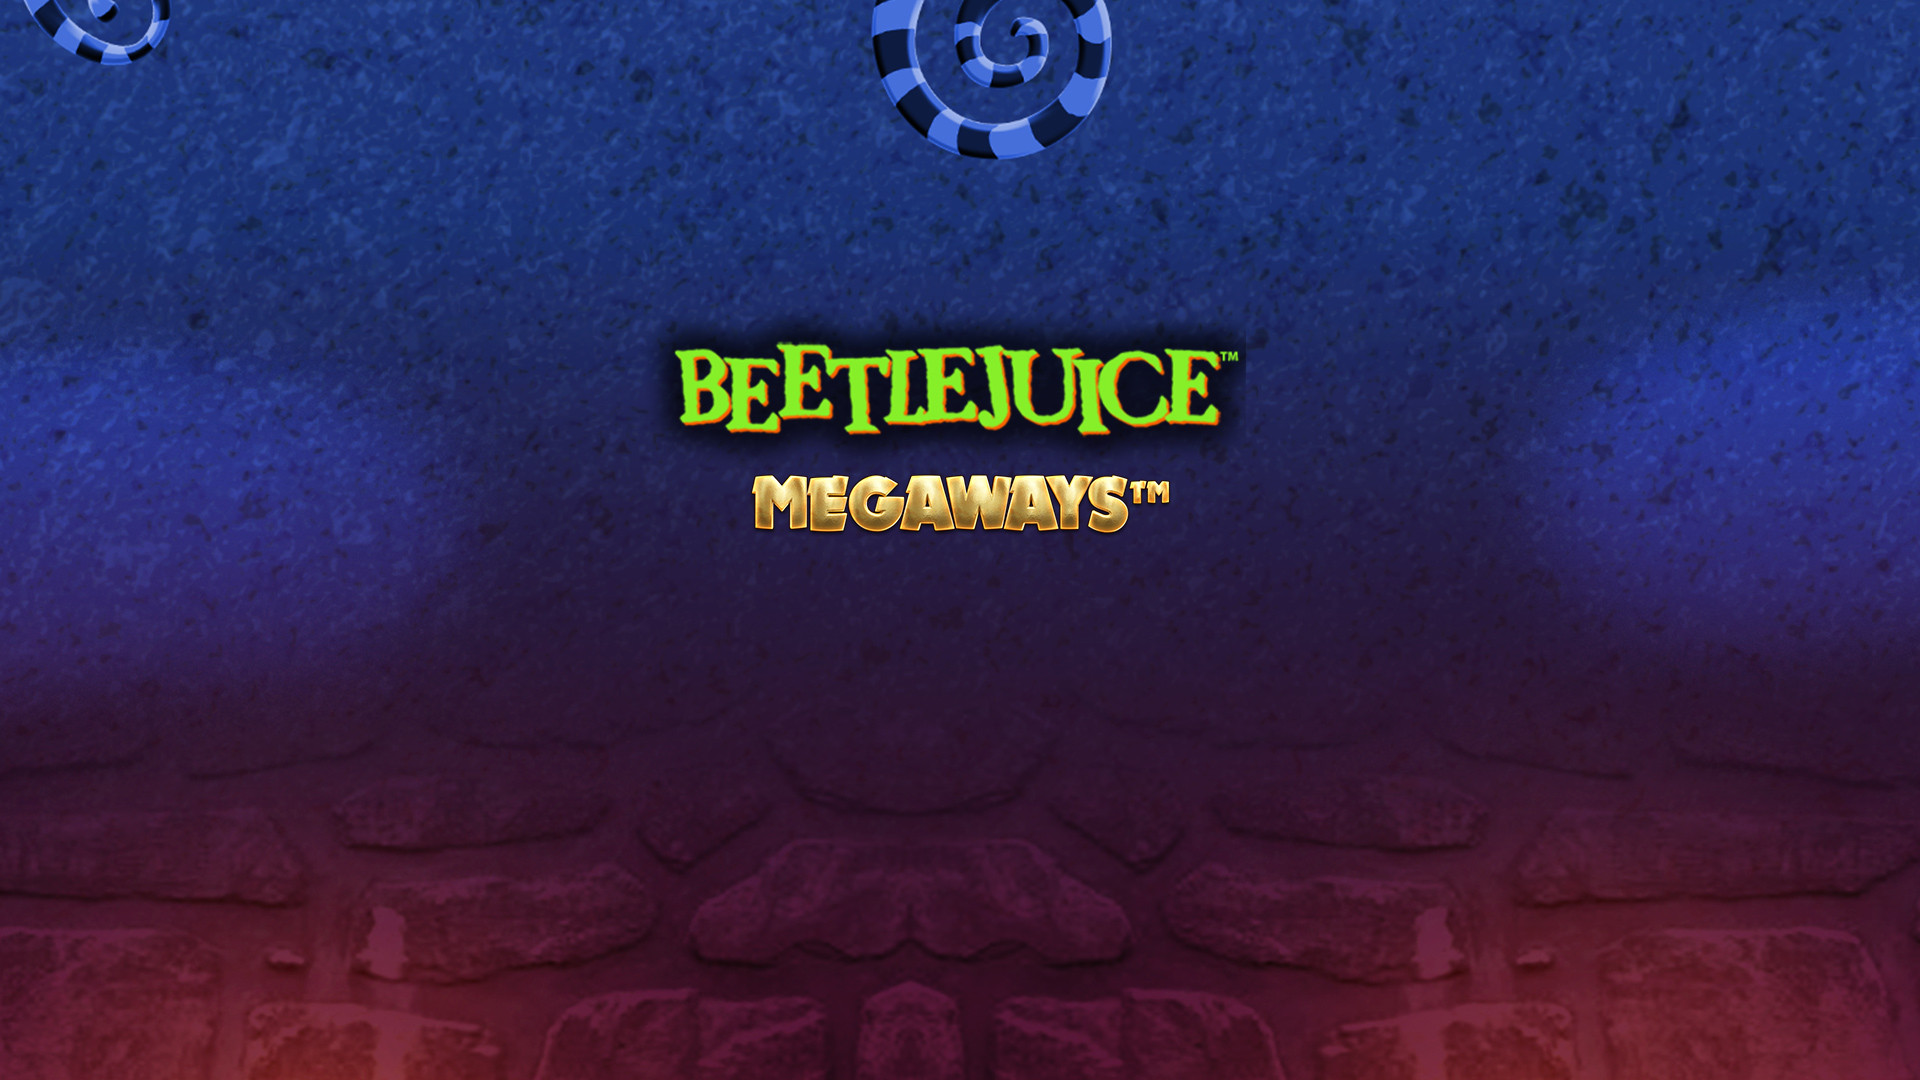 Beetlejuice MEGAWAYS